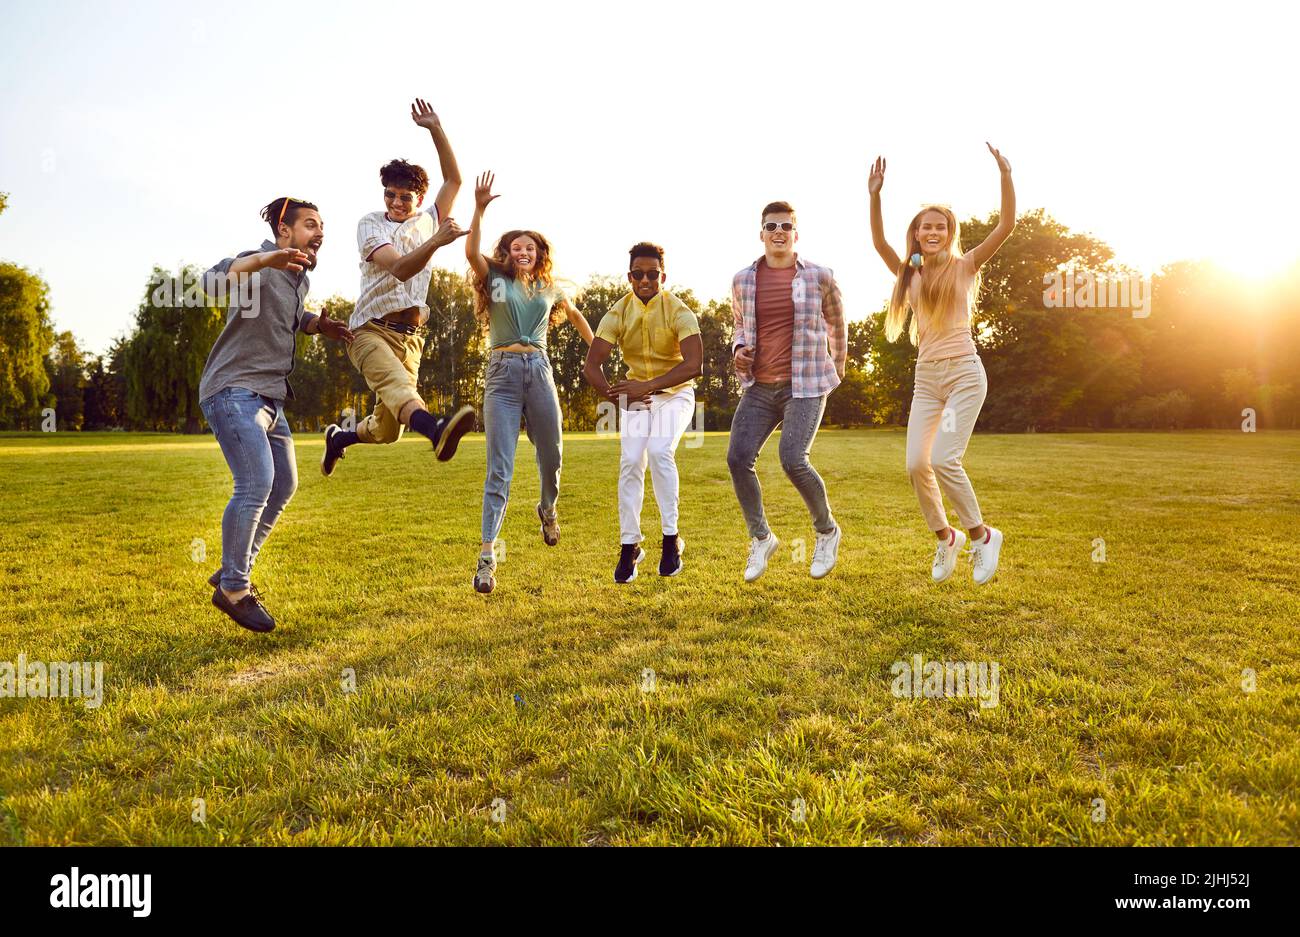 Gruppo multircial di amici felici ed eccitati che saltano sul prato verde del parco tutti insieme Foto Stock